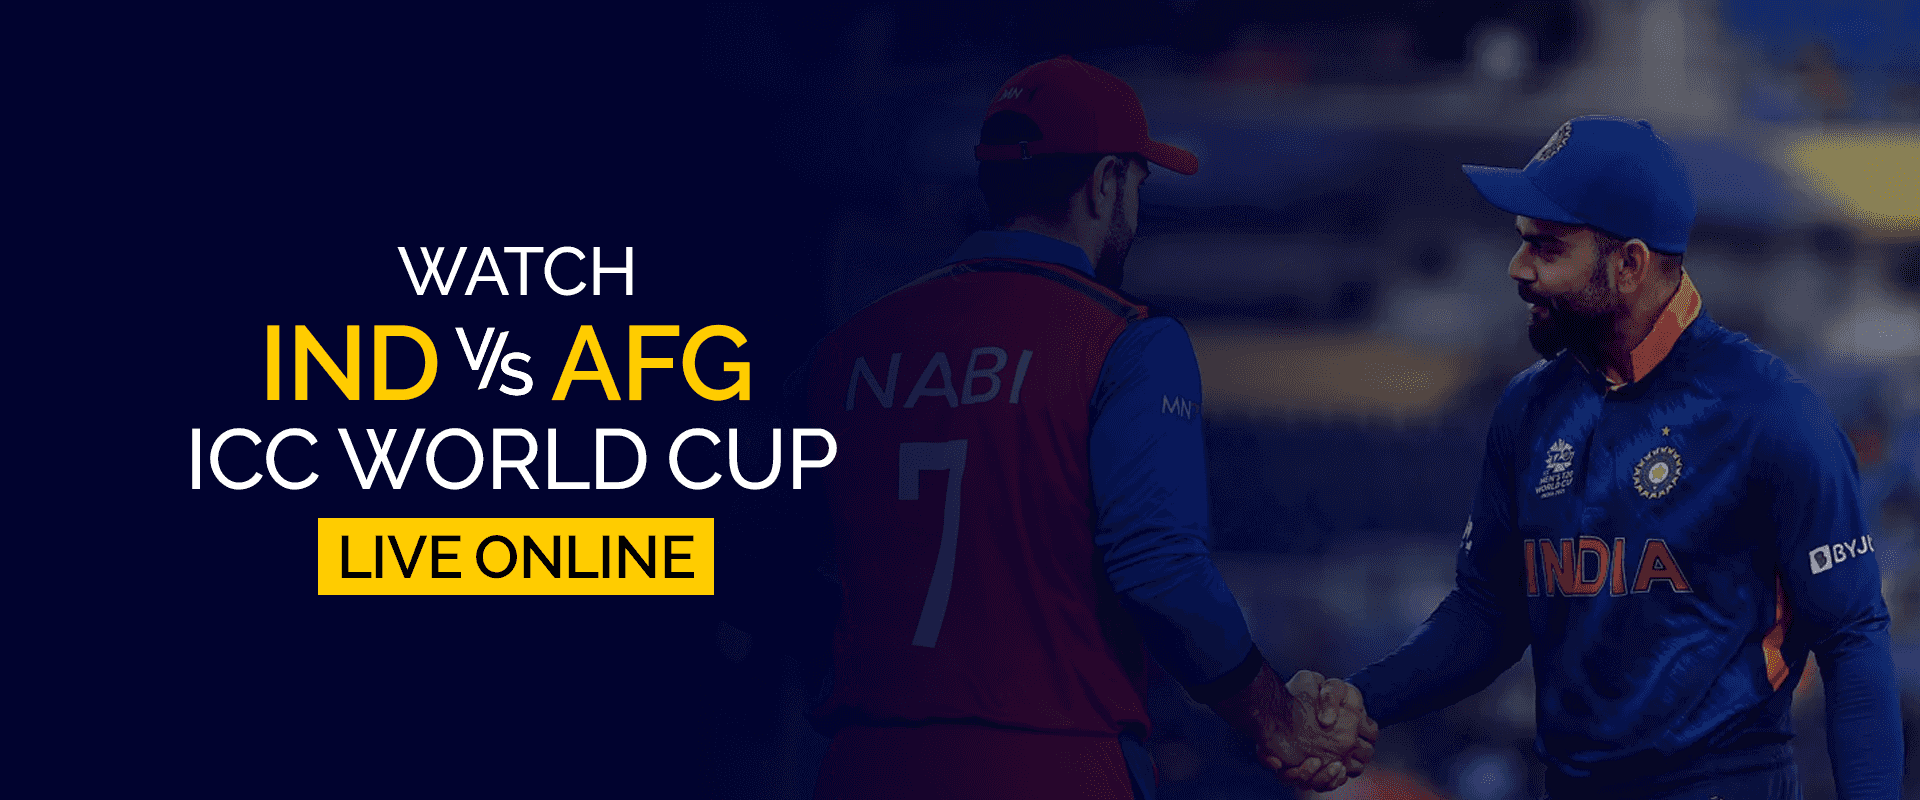 Guarda la Coppa del mondo ICC IND vs AFG in diretta online